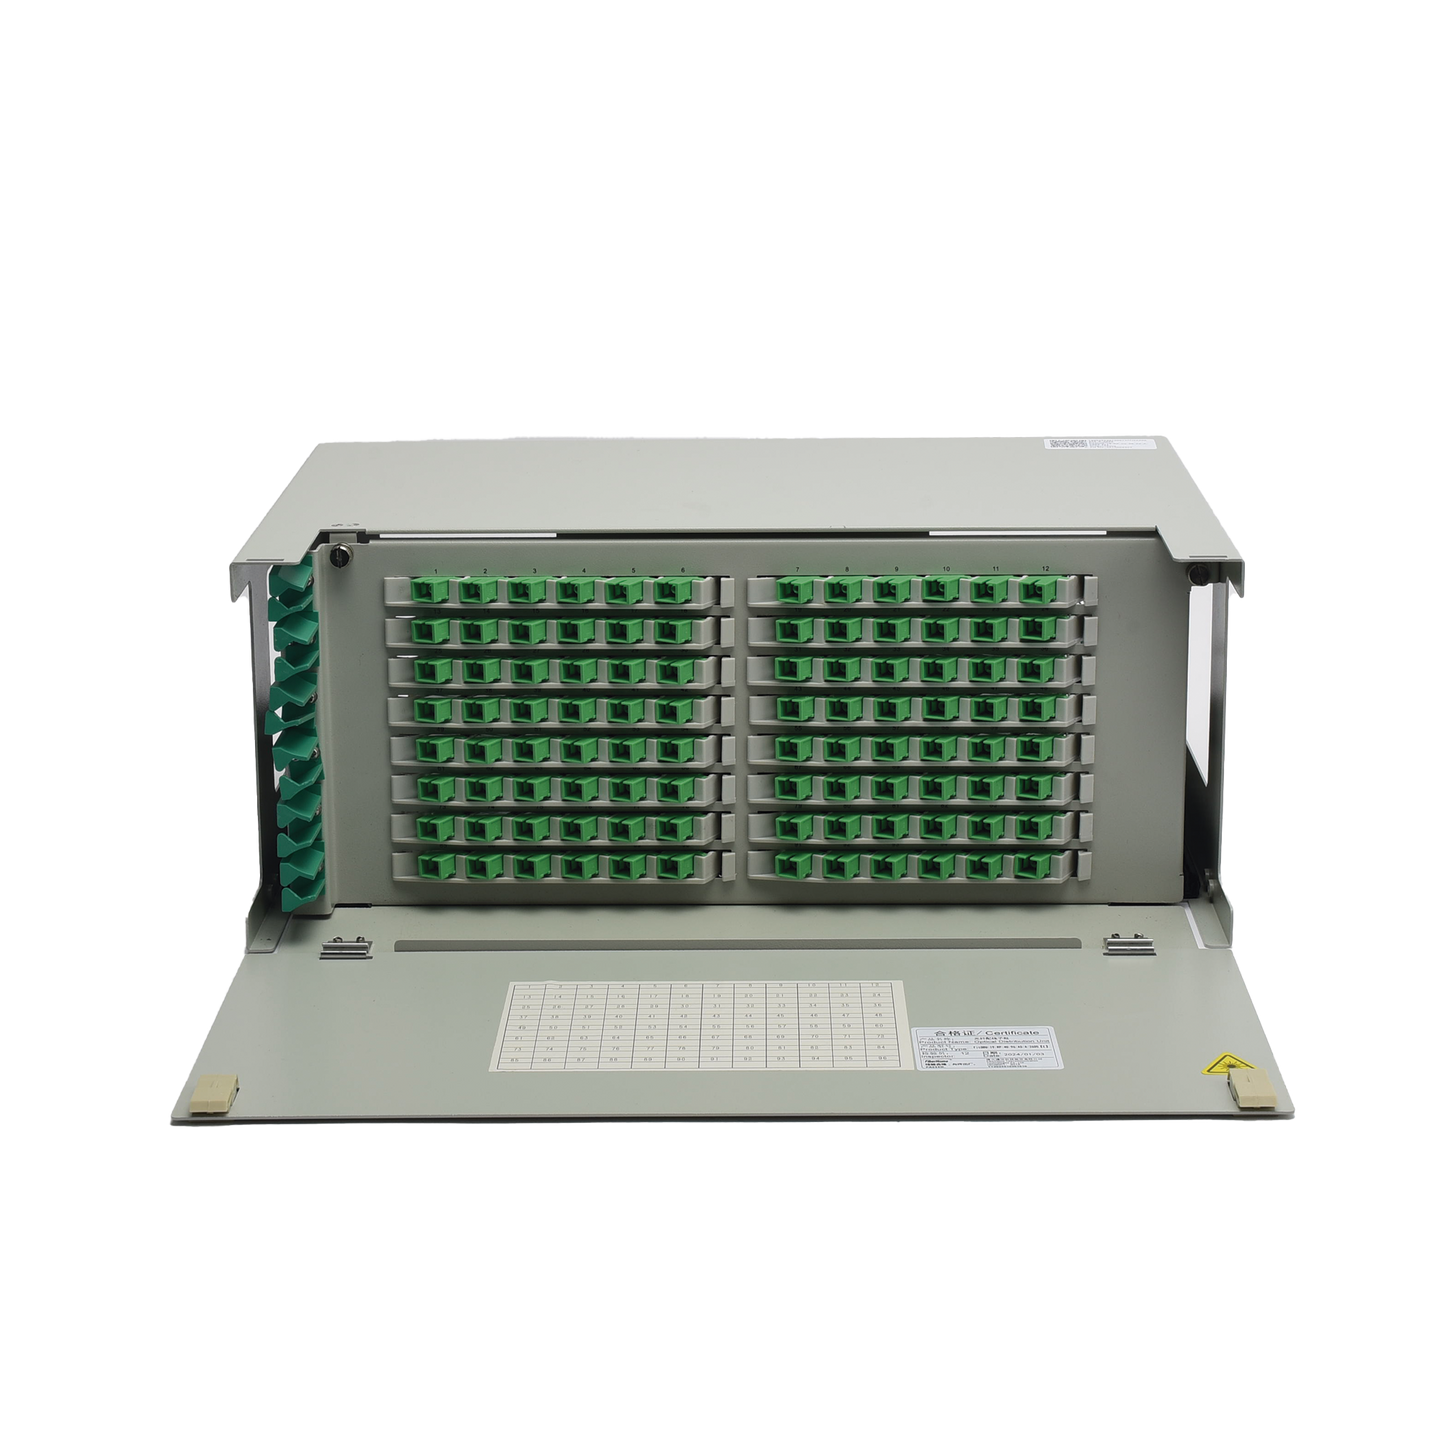 Distribuidor de Fibra Ãptica para 96 empalmes, con 96 acopladores SC/APC y 96 pigtails, 19", 4 UR